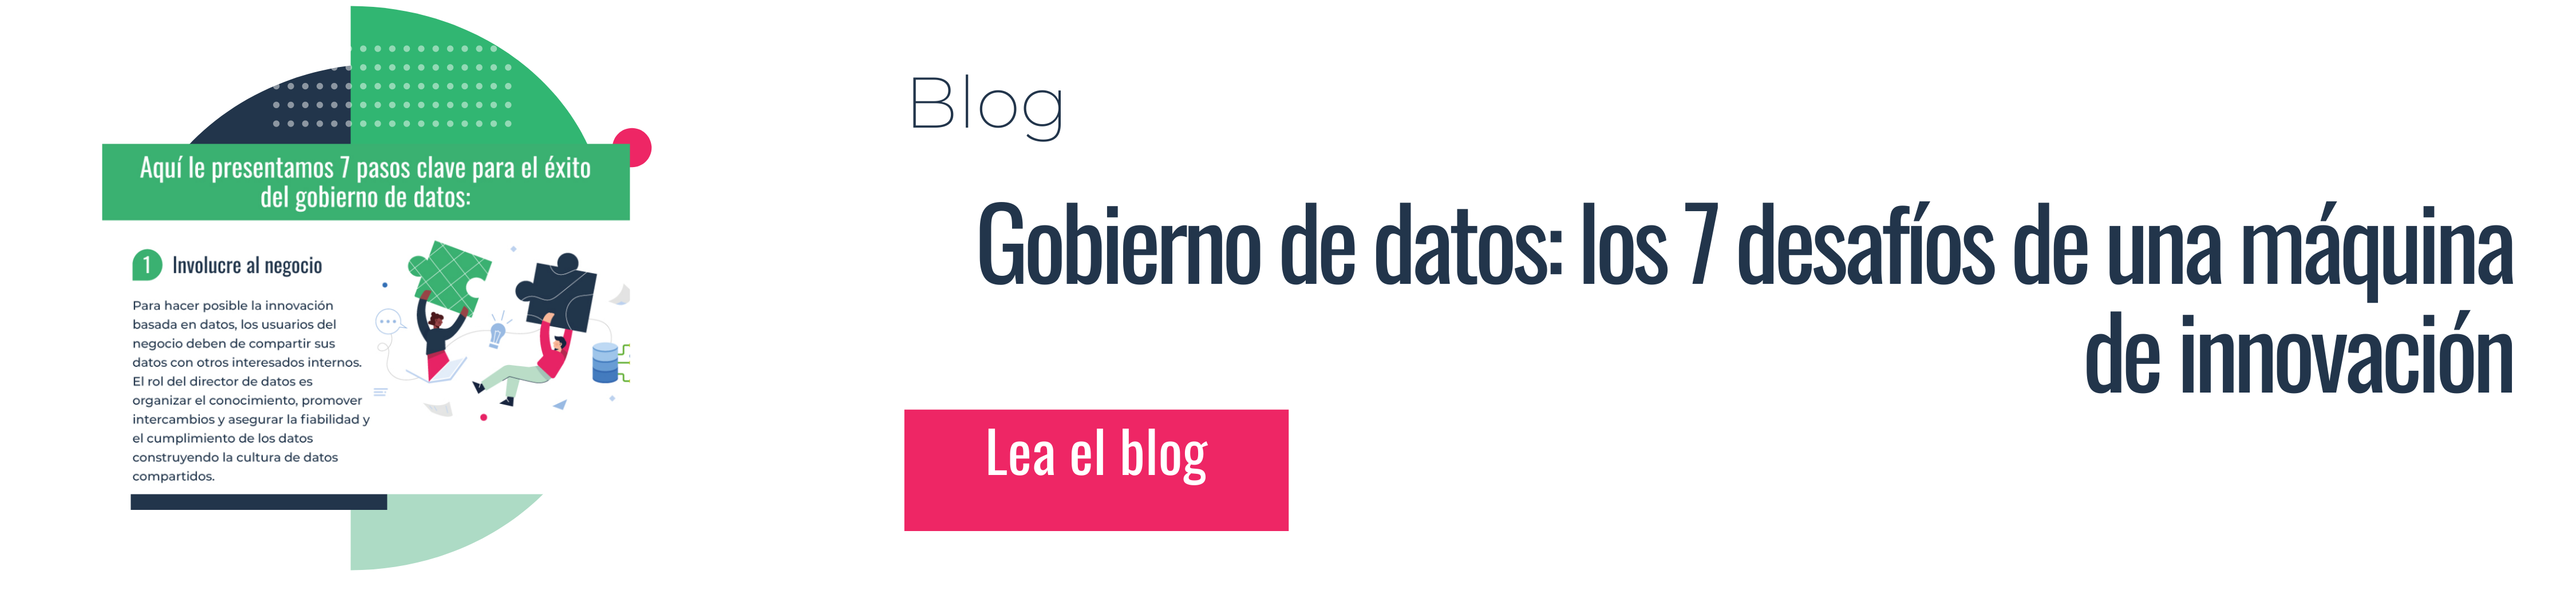 Blog de 7 pasos gobierno de datos